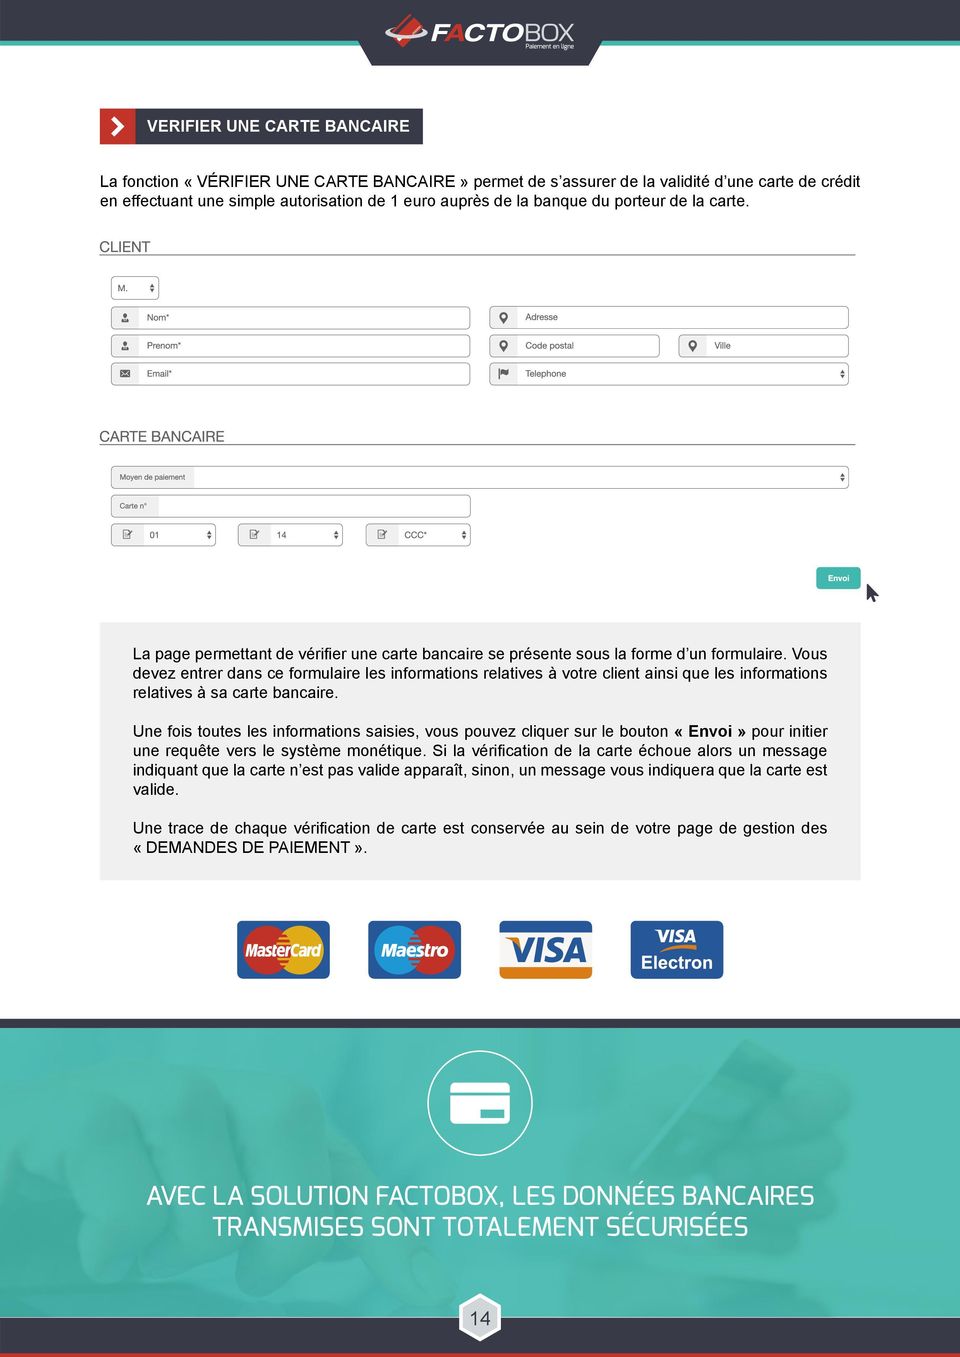 Vous devez entrer dans ce formulaire les informations relatives à votre client ainsi que les informations relatives à sa carte bancaire.